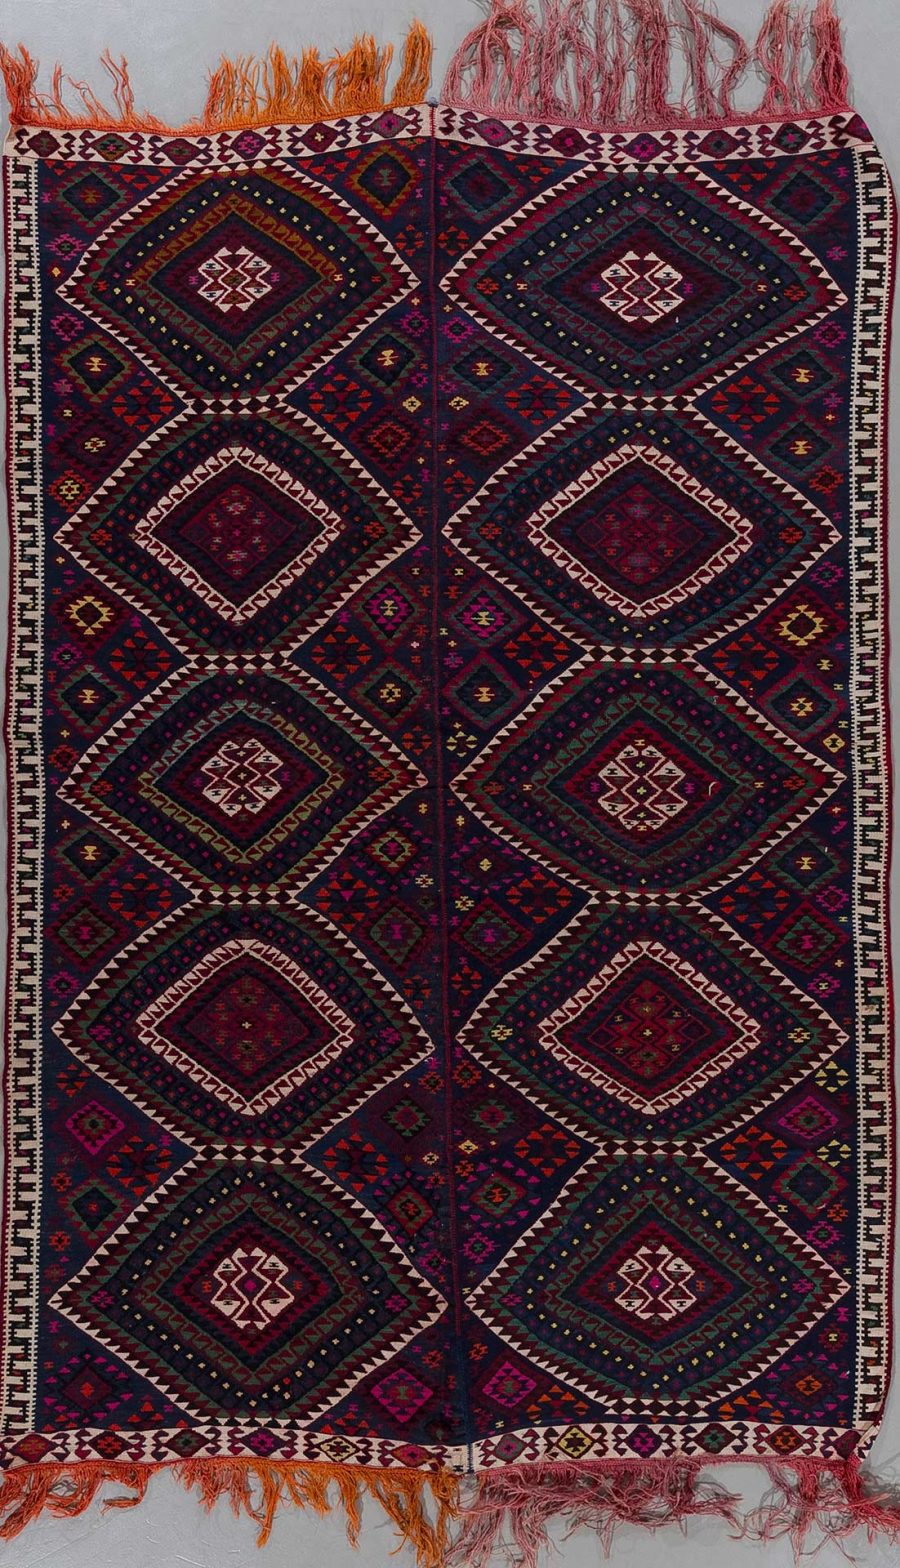 Handgewebter Teppich mit geometrischem Muster und Fransen, vornehmlich in dunkelroten und blauen Farbtönen, auf einem hellen Untergrund hängend.